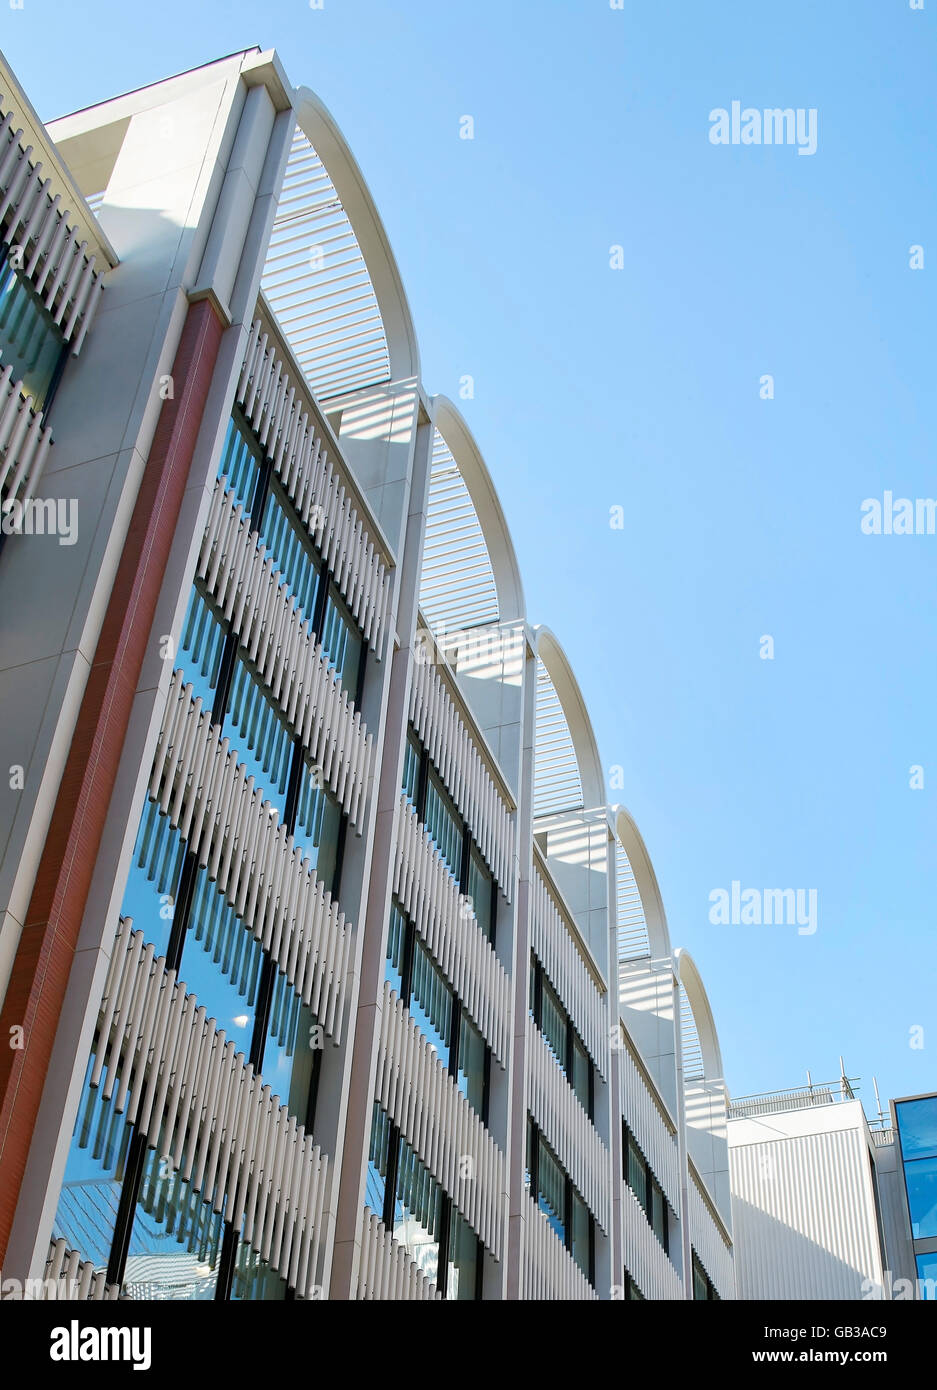 Détails façade revêtement métallique avec brises-soleil. Fitzroy, London, Royaume-Uni. Architecte : Lifschutz Davidson Sandilands, 2015. Banque D'Images